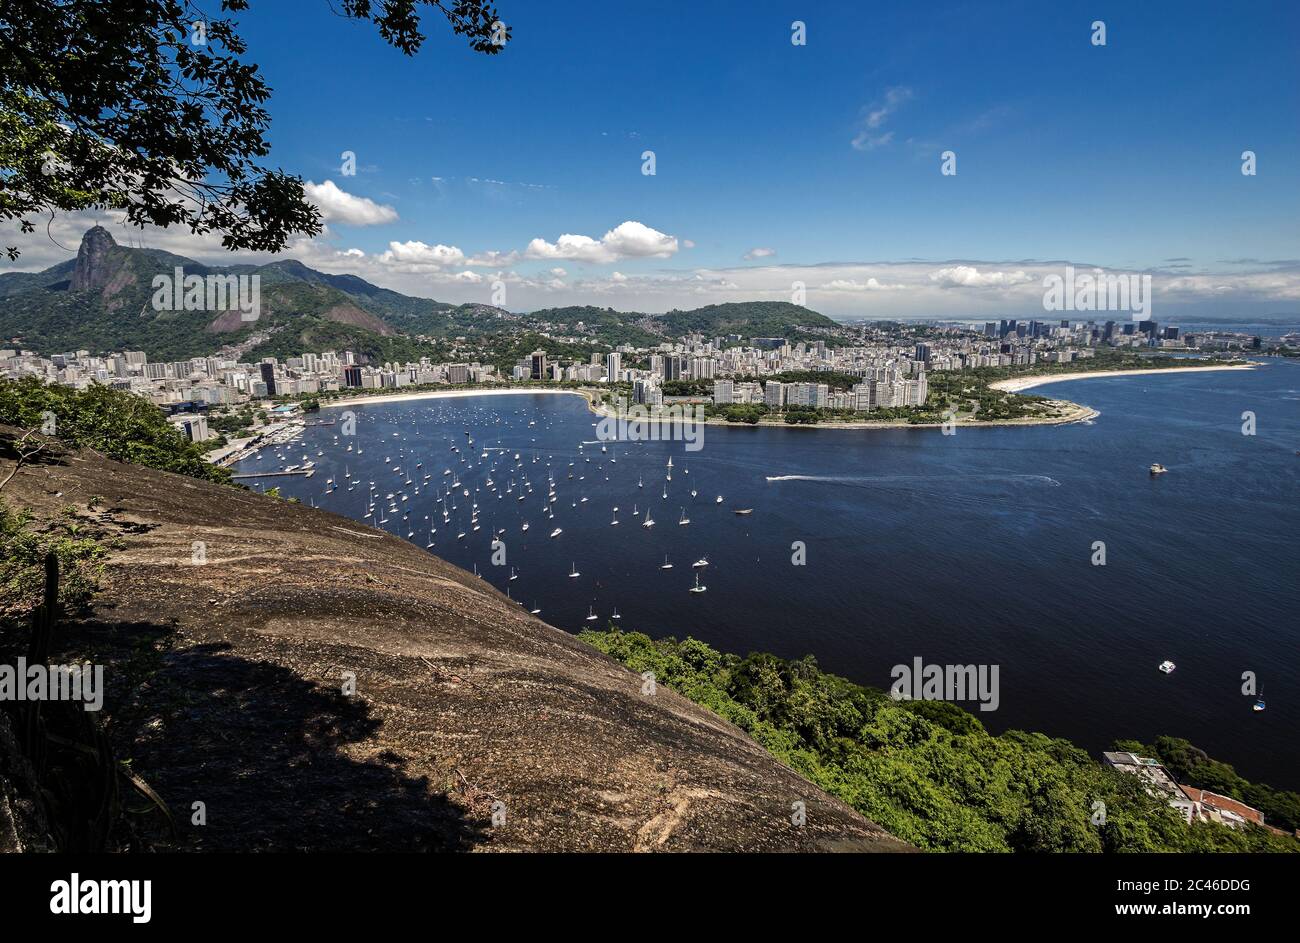 Rio de Janeiro, Brazil - Guanabara Bay, Botafogo Cove and the coastal neighborhoods of Urca, Botafogo and Flamengo Stock Photo